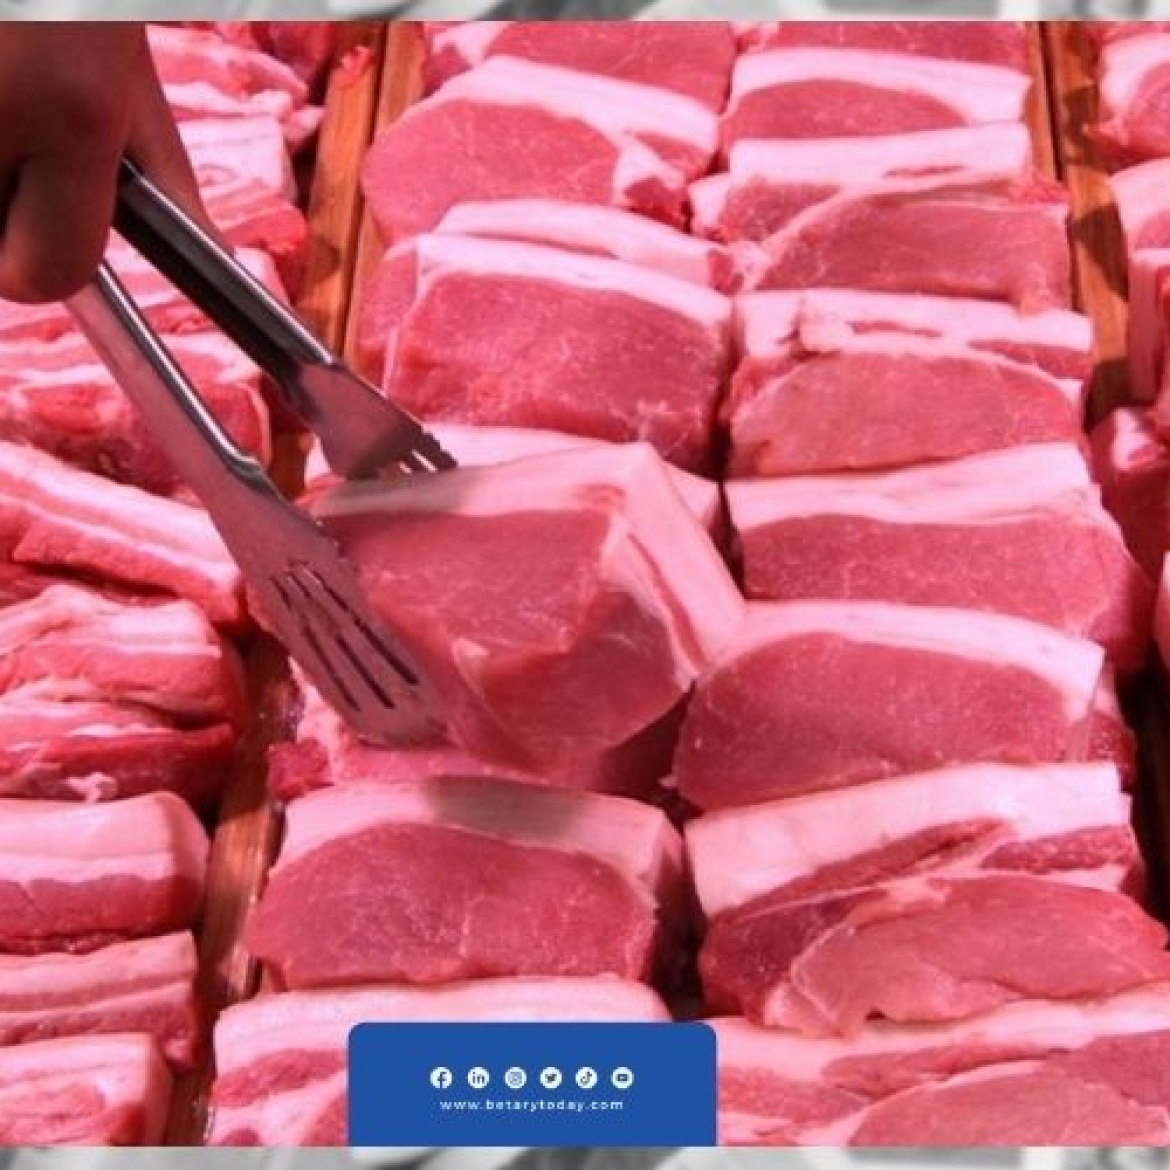 مفاجأة في أسعار اللحوم الحمراء البلدى والمستوردة اليوم الثلاثاء في الأسواق